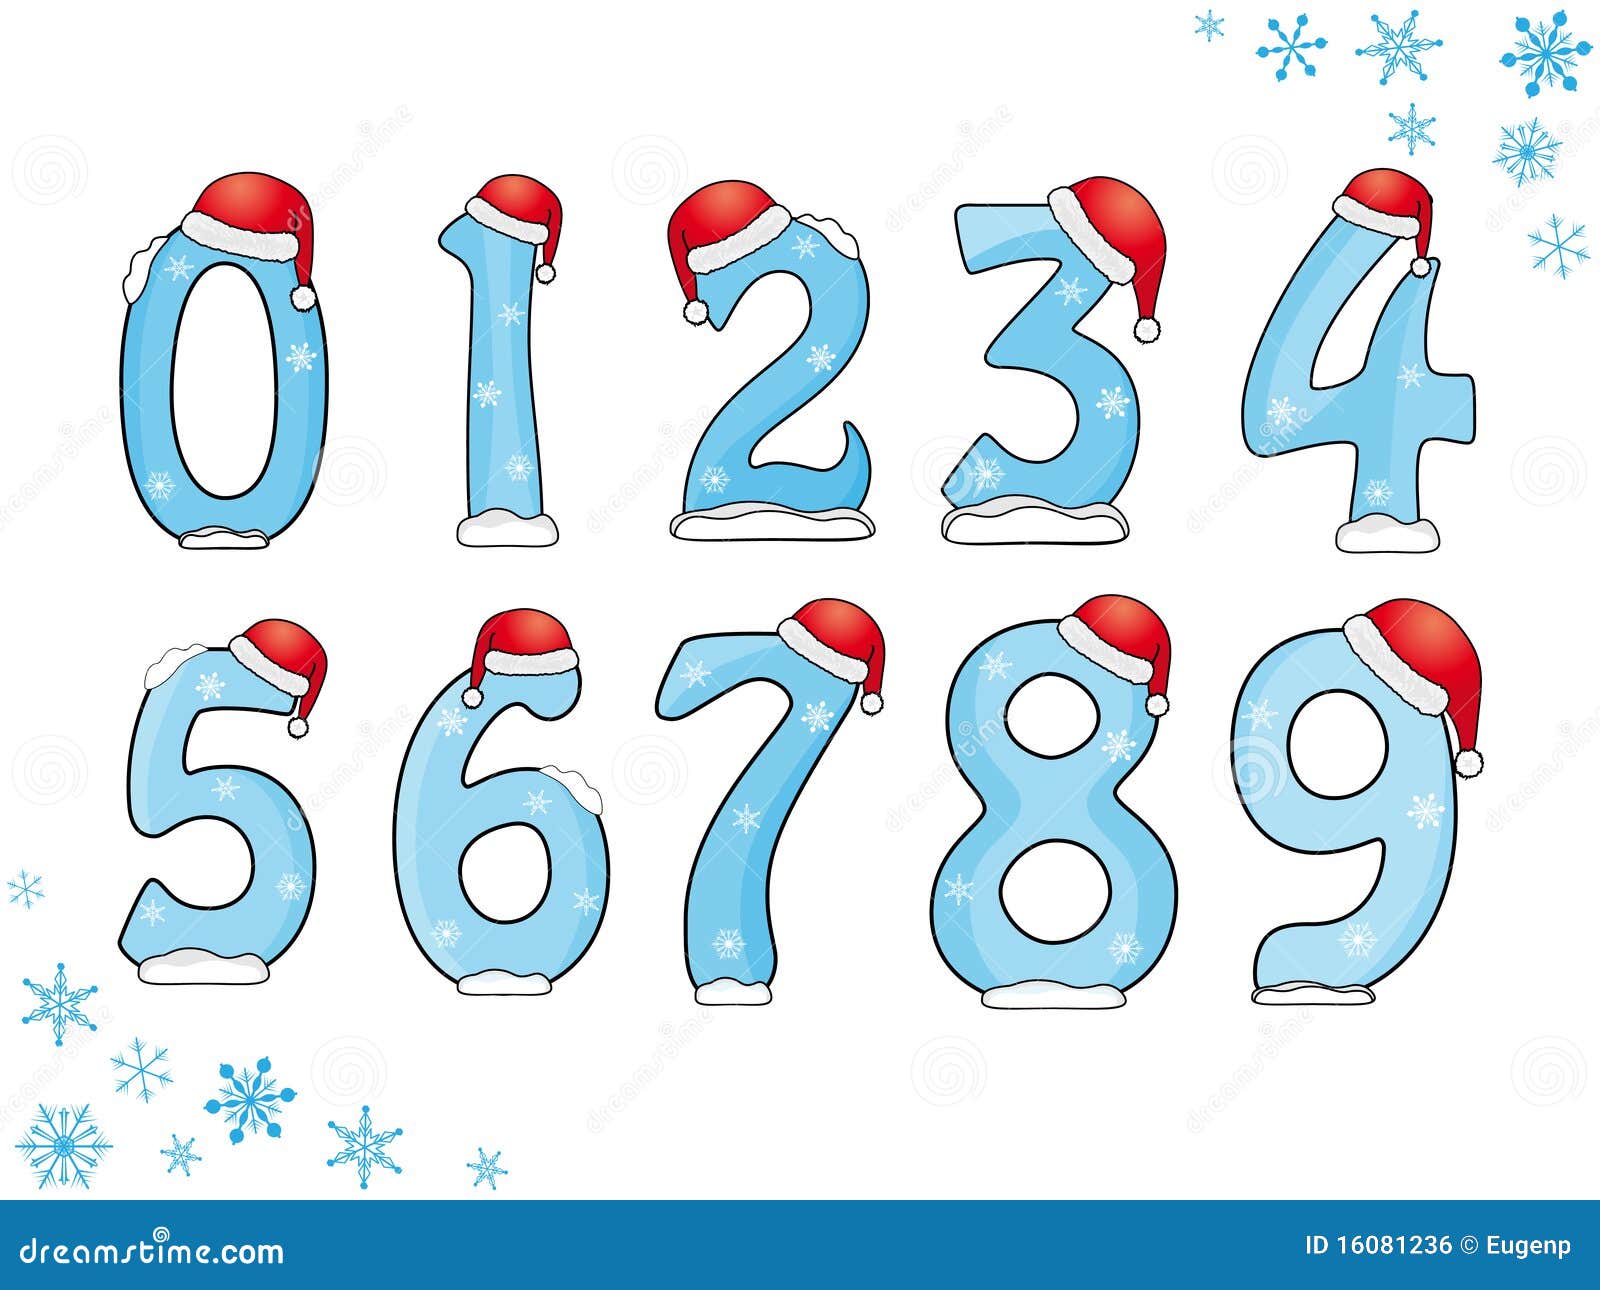 Снежки цифра 1. Новогодние цифры для оформления. Цифры от 1 до 10 новогодние. Цифры в новогоднем стиле. Новогодние цифры в колпачках.